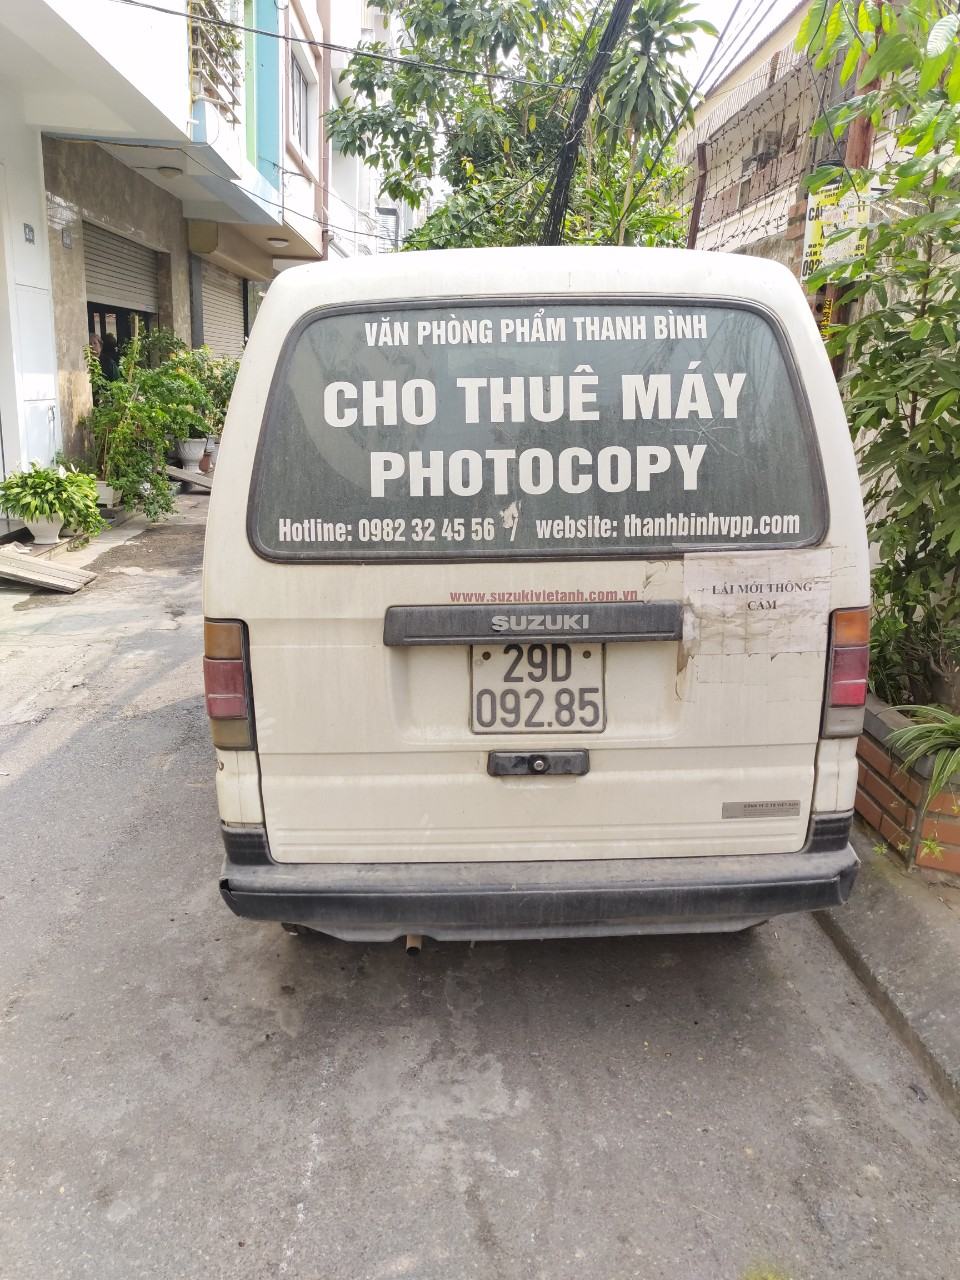 Cho thuê máy photocopy tại kcn Đồng Văn Hà Nam giá rẻ, chất lượng dịch vụ tốt nhất